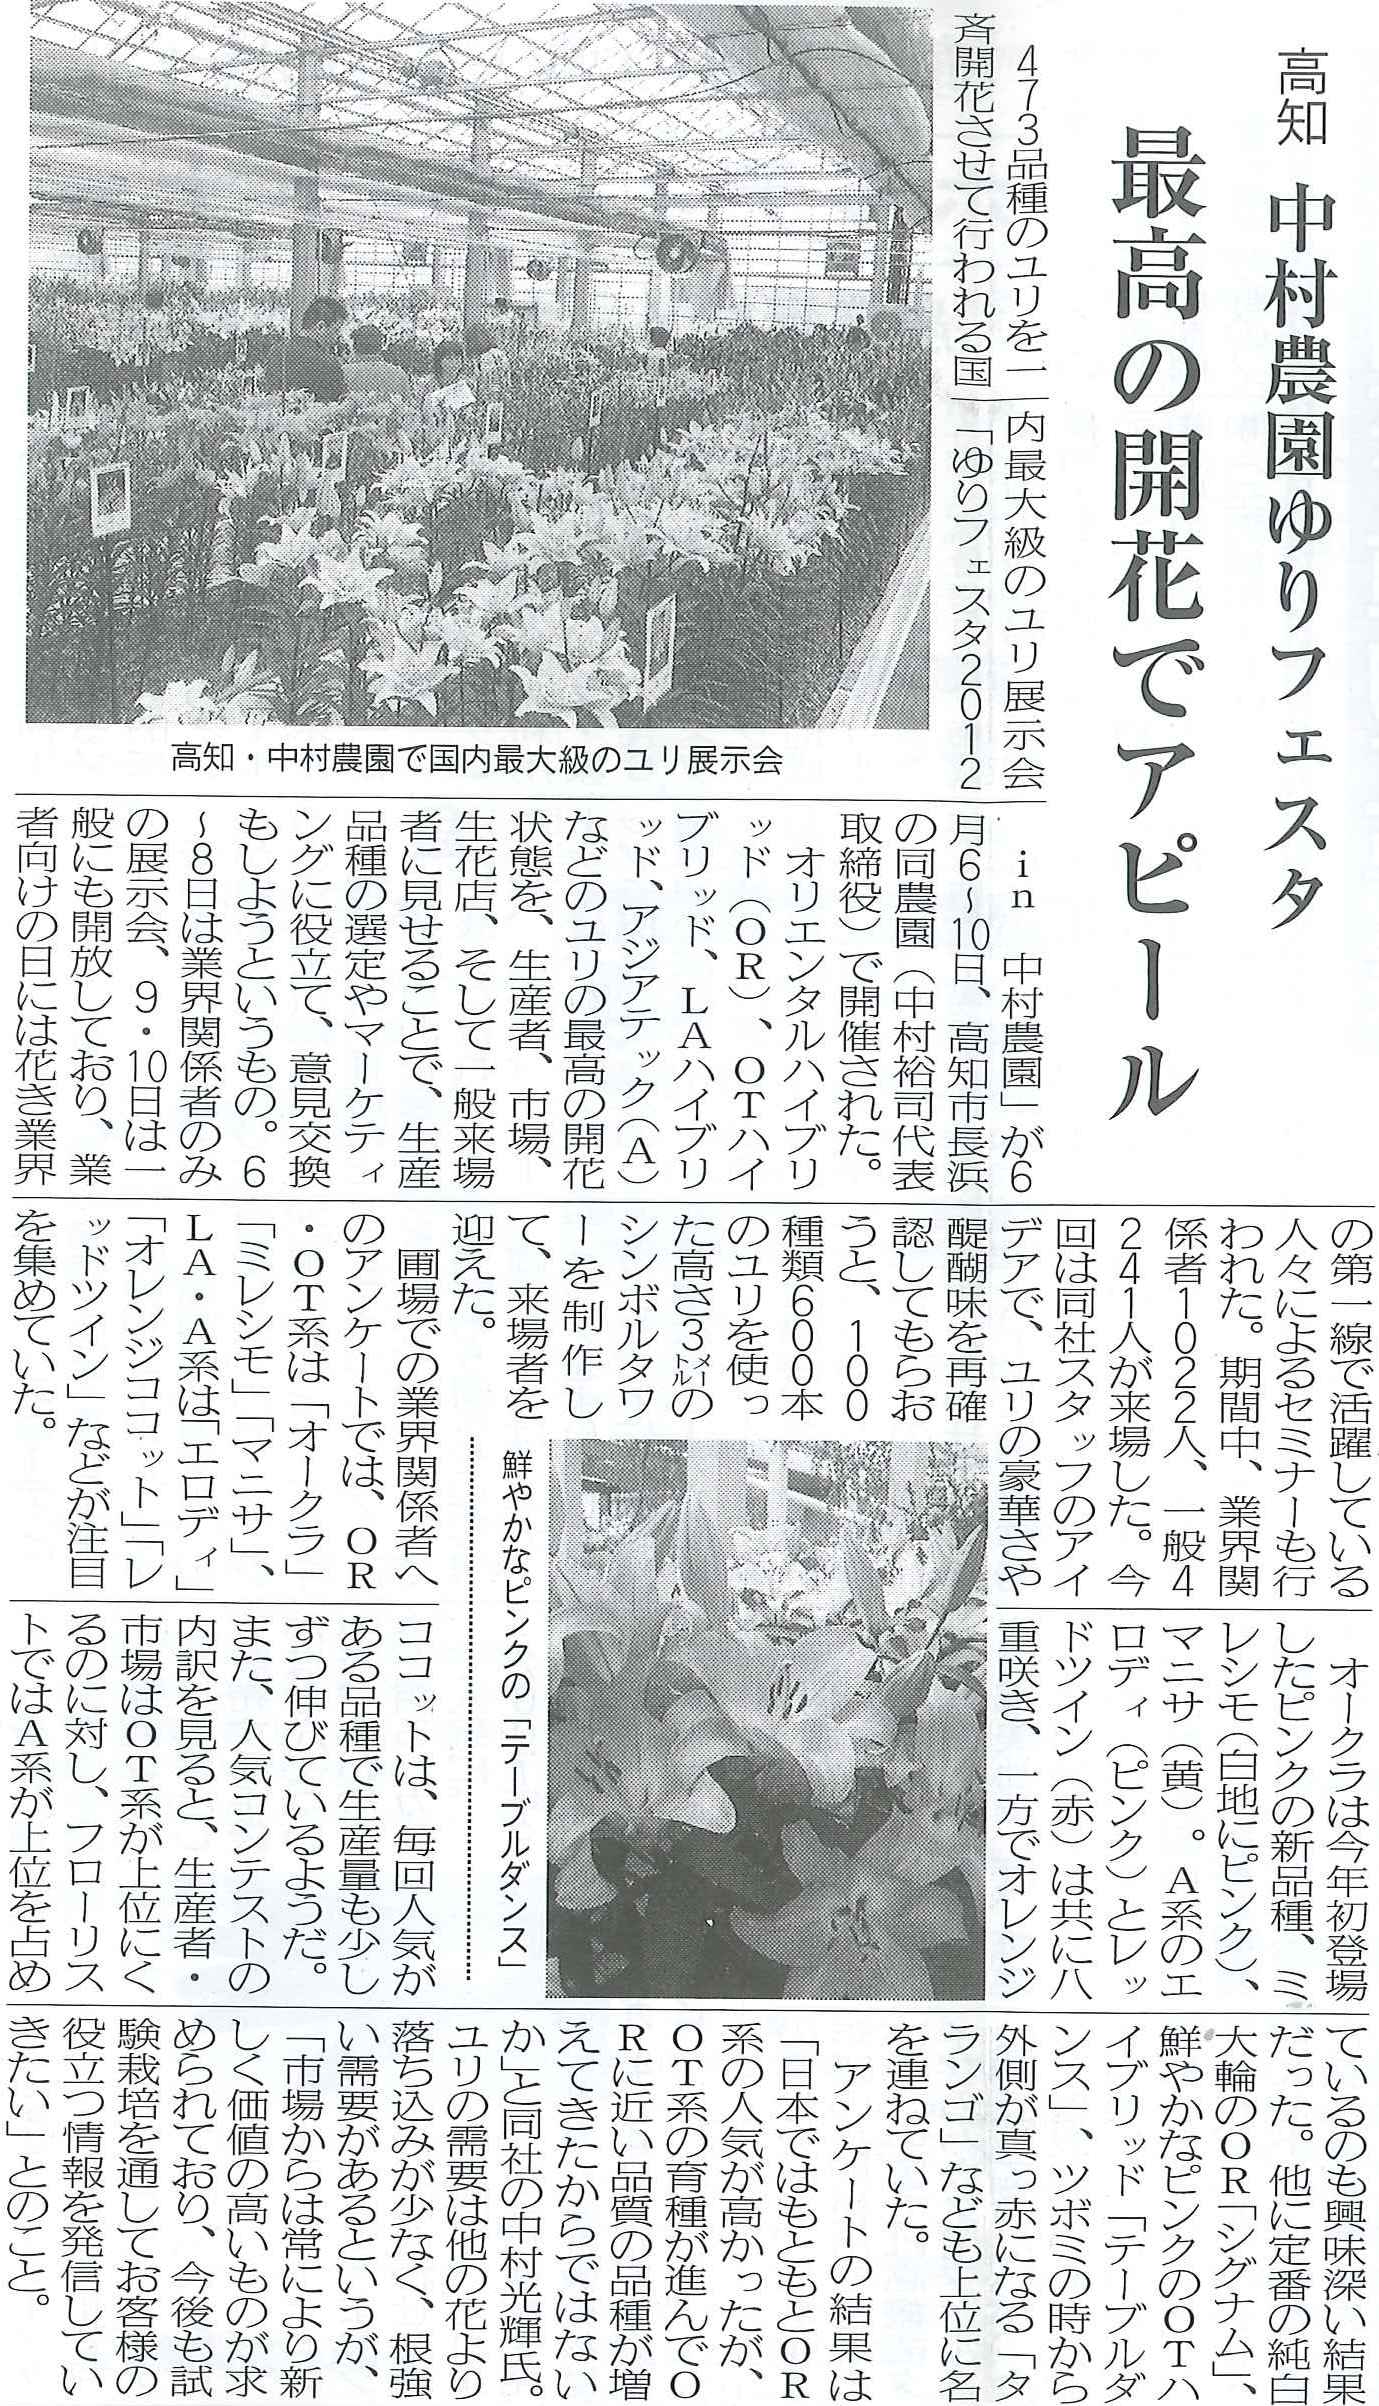 花卉園芸新聞にゆりフェスタの記事が掲載されました（2012/7/17）